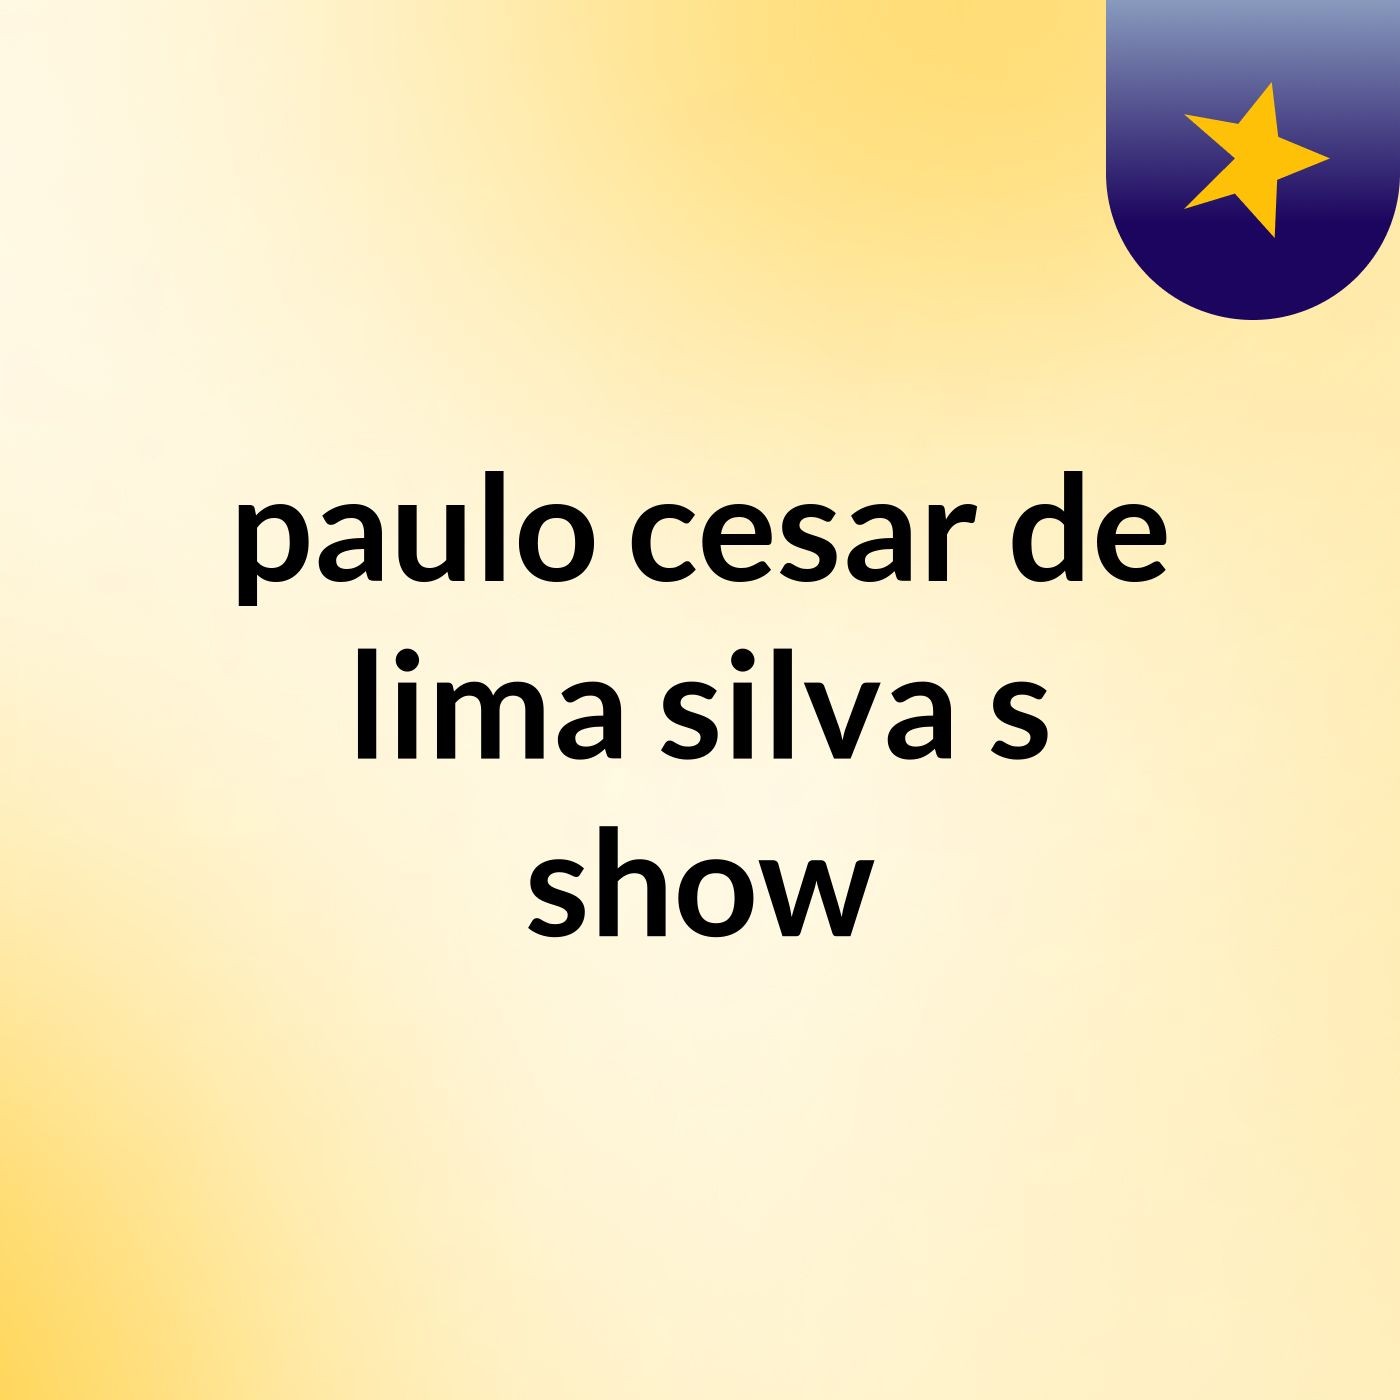 paulo cesar de lima silva's show